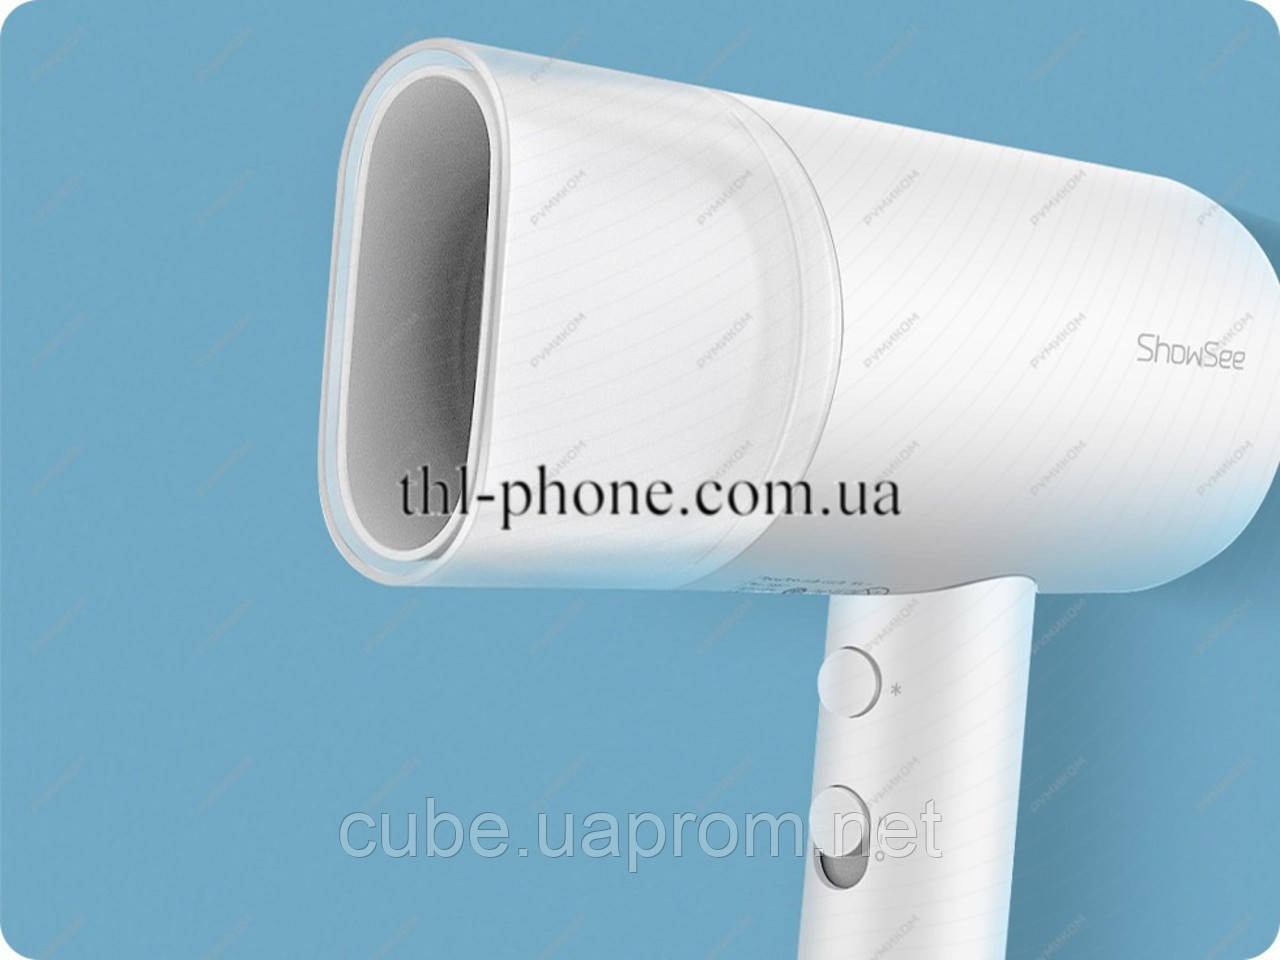 Фен Xiaomi ShowSee A2-W xiaoshi hair dryer